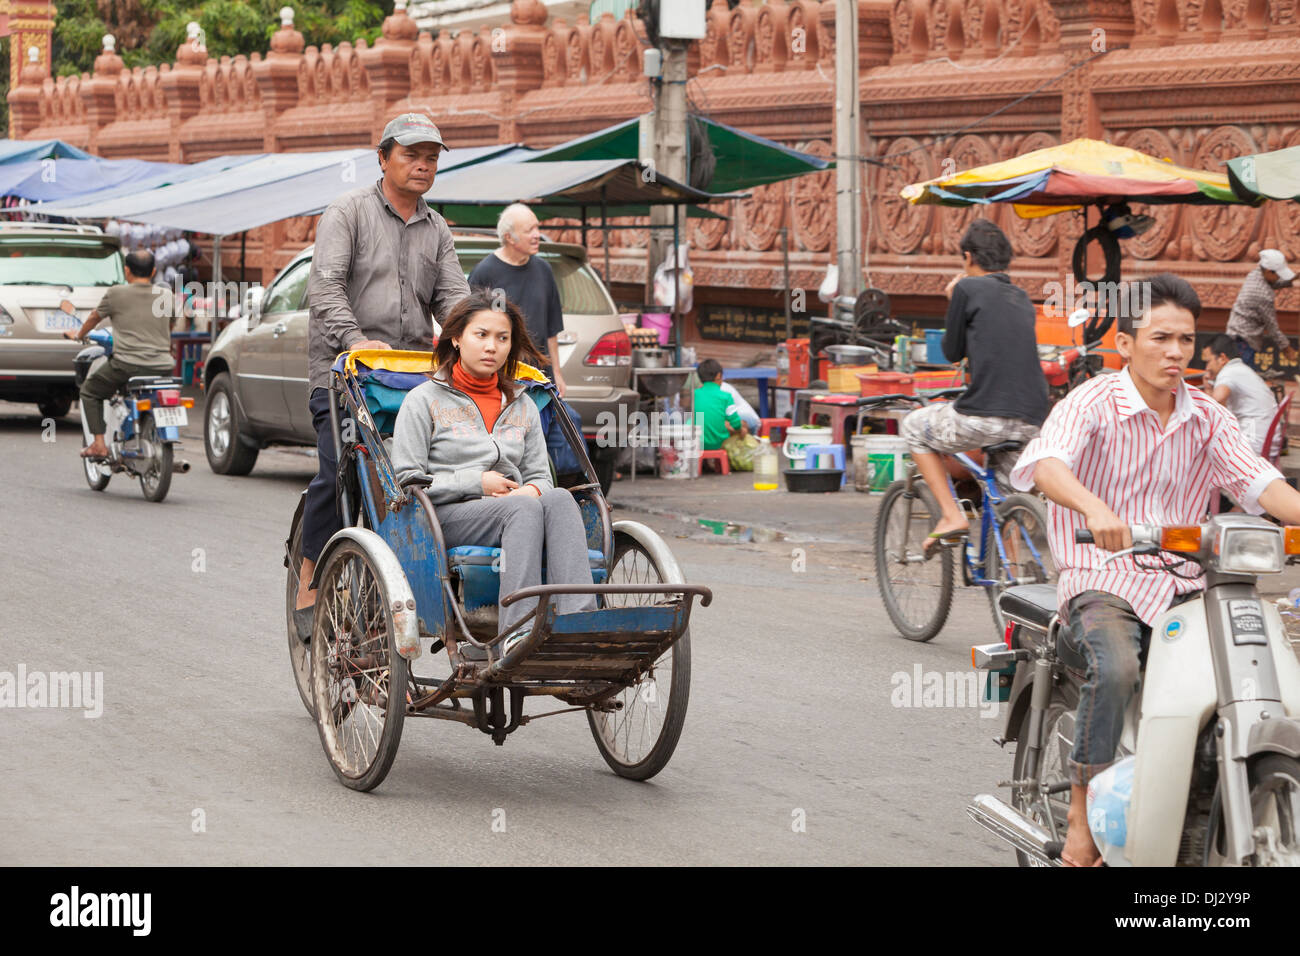 Cyclo in Phnom Penh, Cambodia Stock Photo